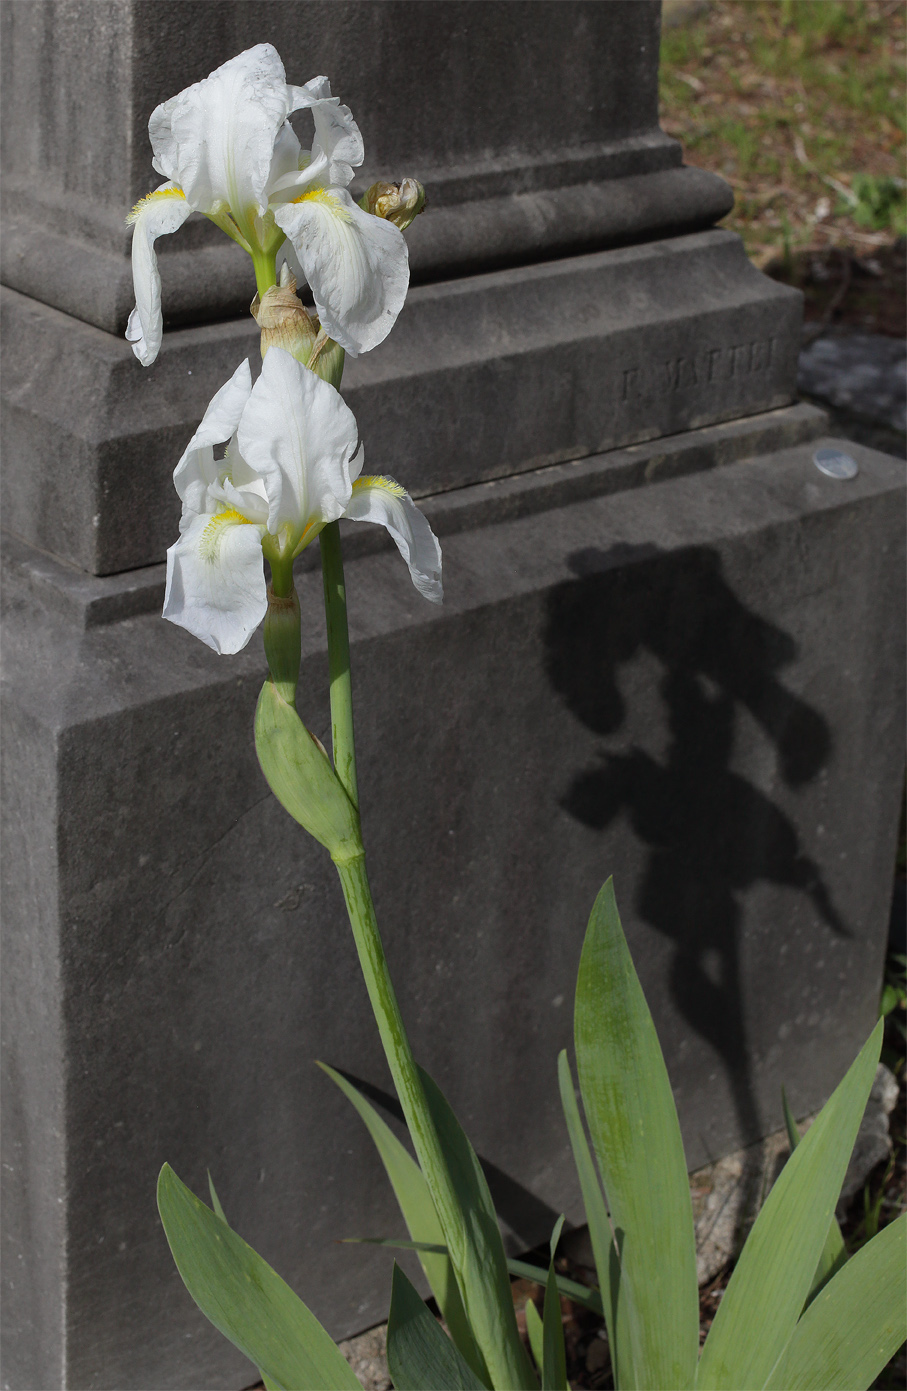 scapo fiorifero di Iris florentina L. con 2 fiori aperti, che proiettano la loro ombra